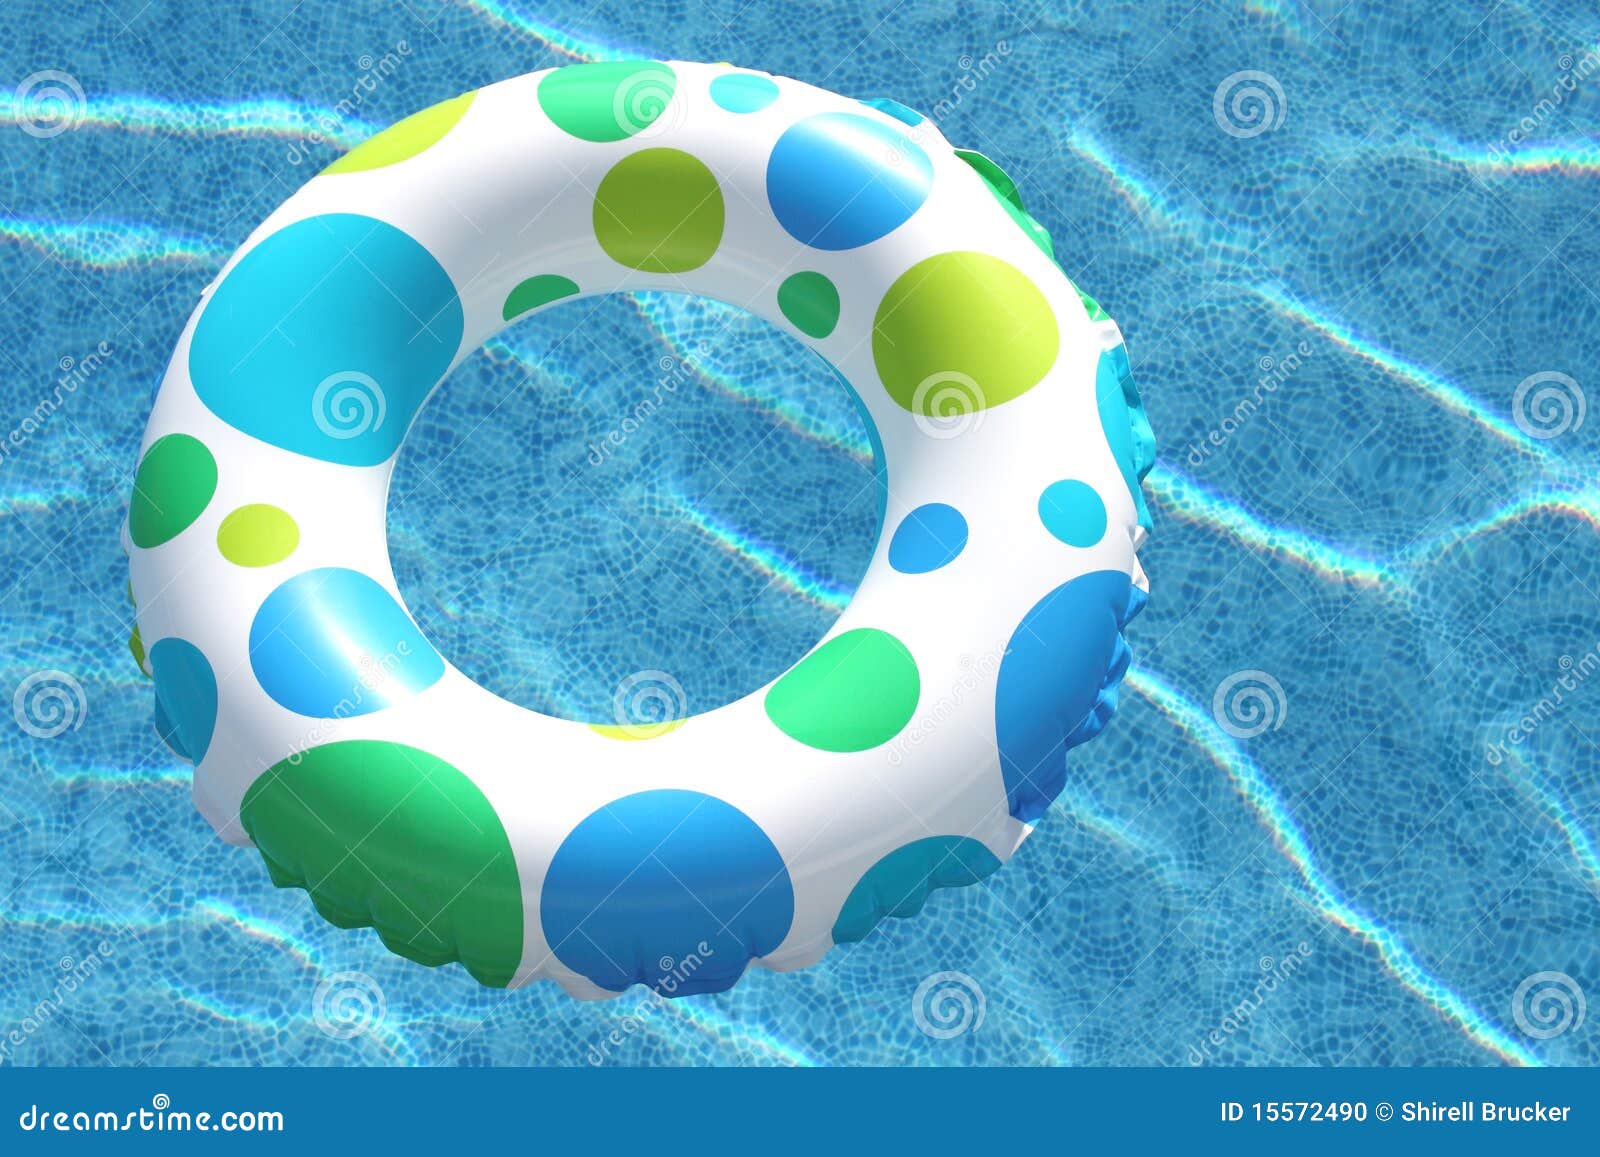 air tube swimming pool